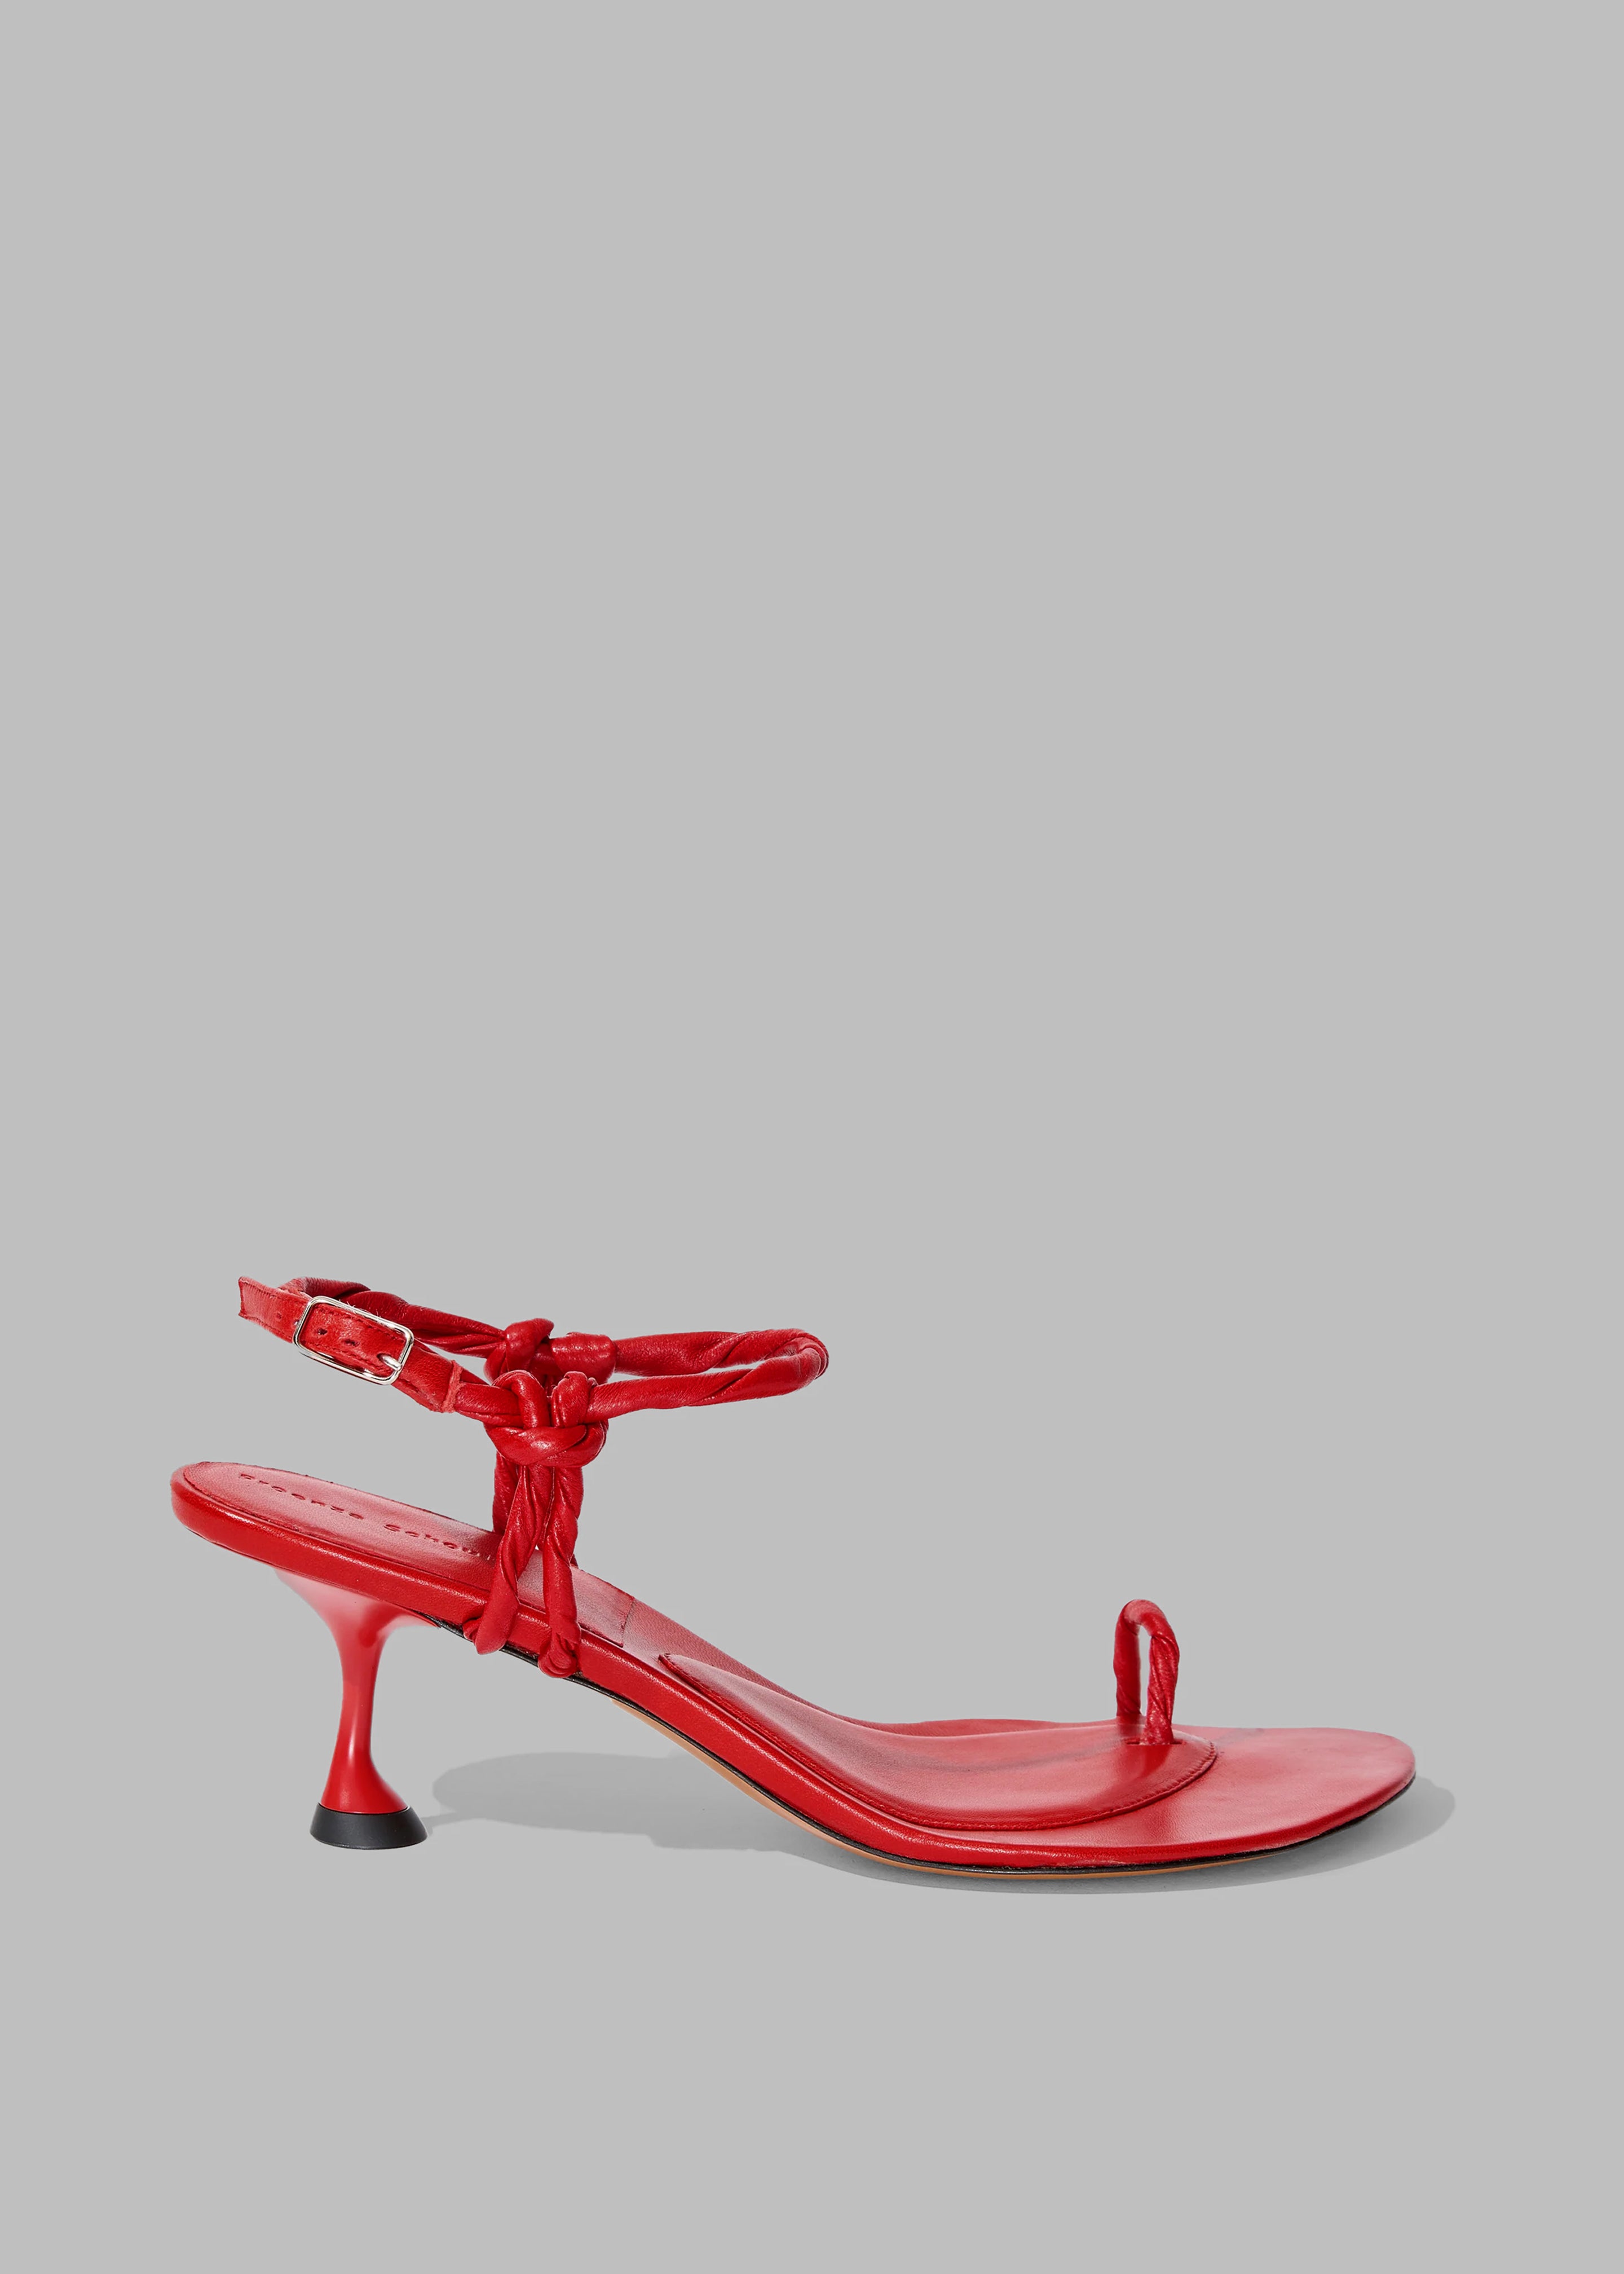 Proenza Schouler Tee Toe Ring Sandals - Red - 1